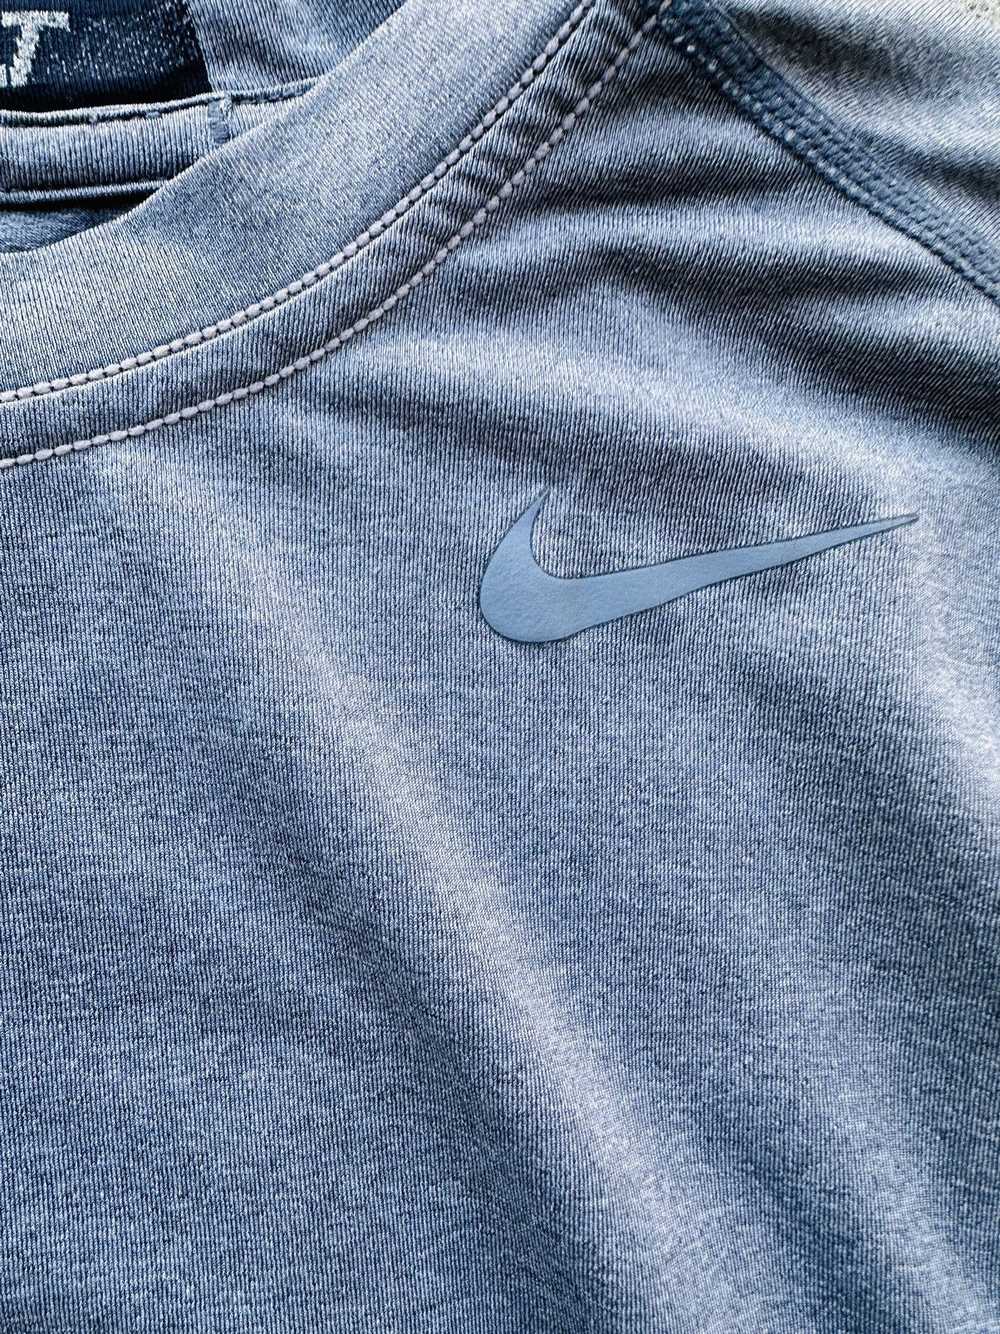 Nike Nike Pro Combat Dri-FIT Tight Short-Sleeve T… - image 3